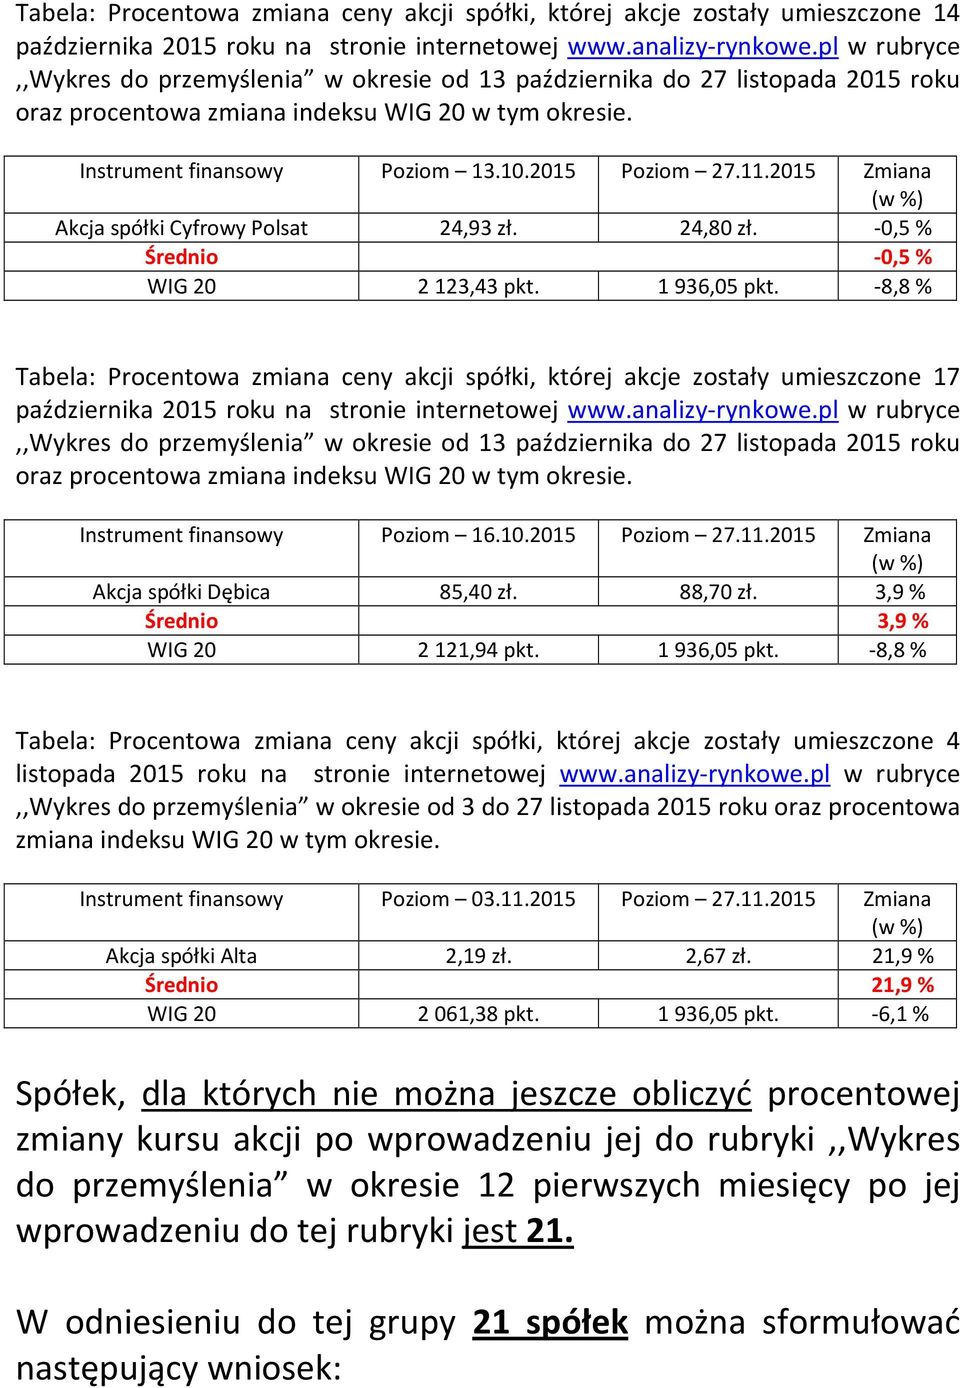 2015 Zmiana Akcja spółki Cyfrowy Polsat 24,93 zł. 24,80 zł. -0,5% Średnio -0,5% WIG 20 2123,43 pkt. 1936,05 pkt.